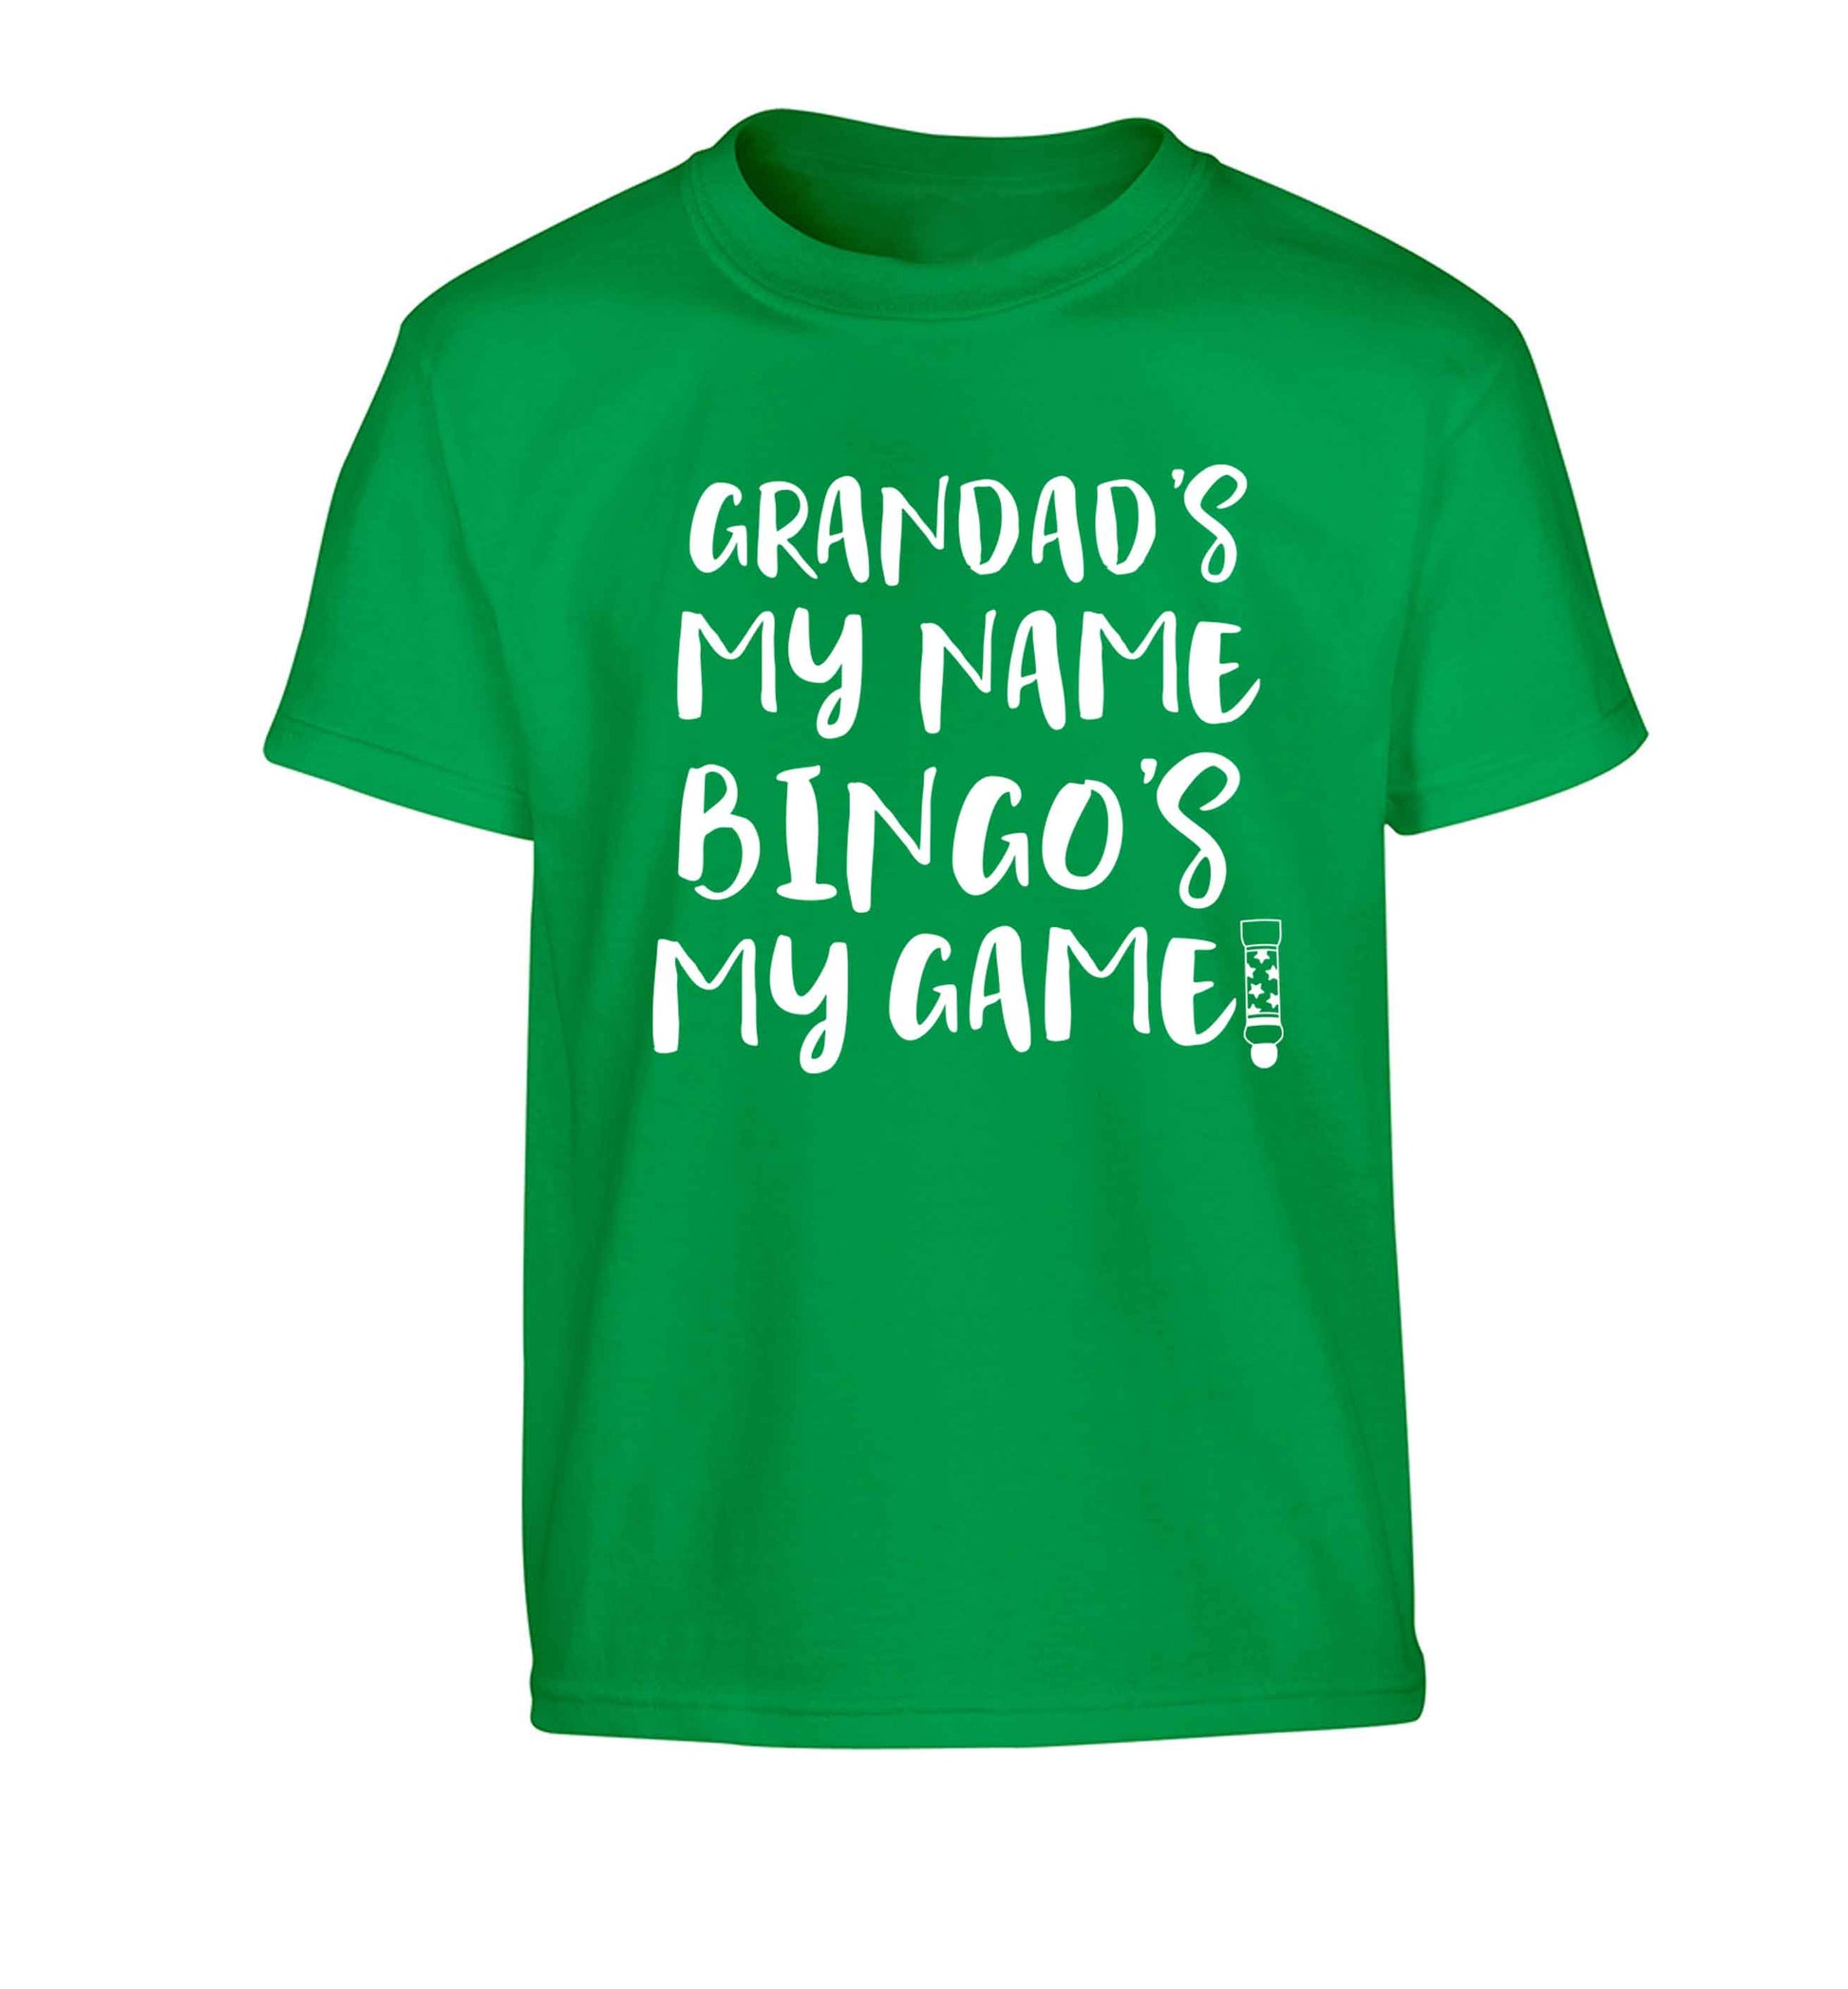 Grandad's my name bingo's my game! Children's green Tshirt 12-13 Years